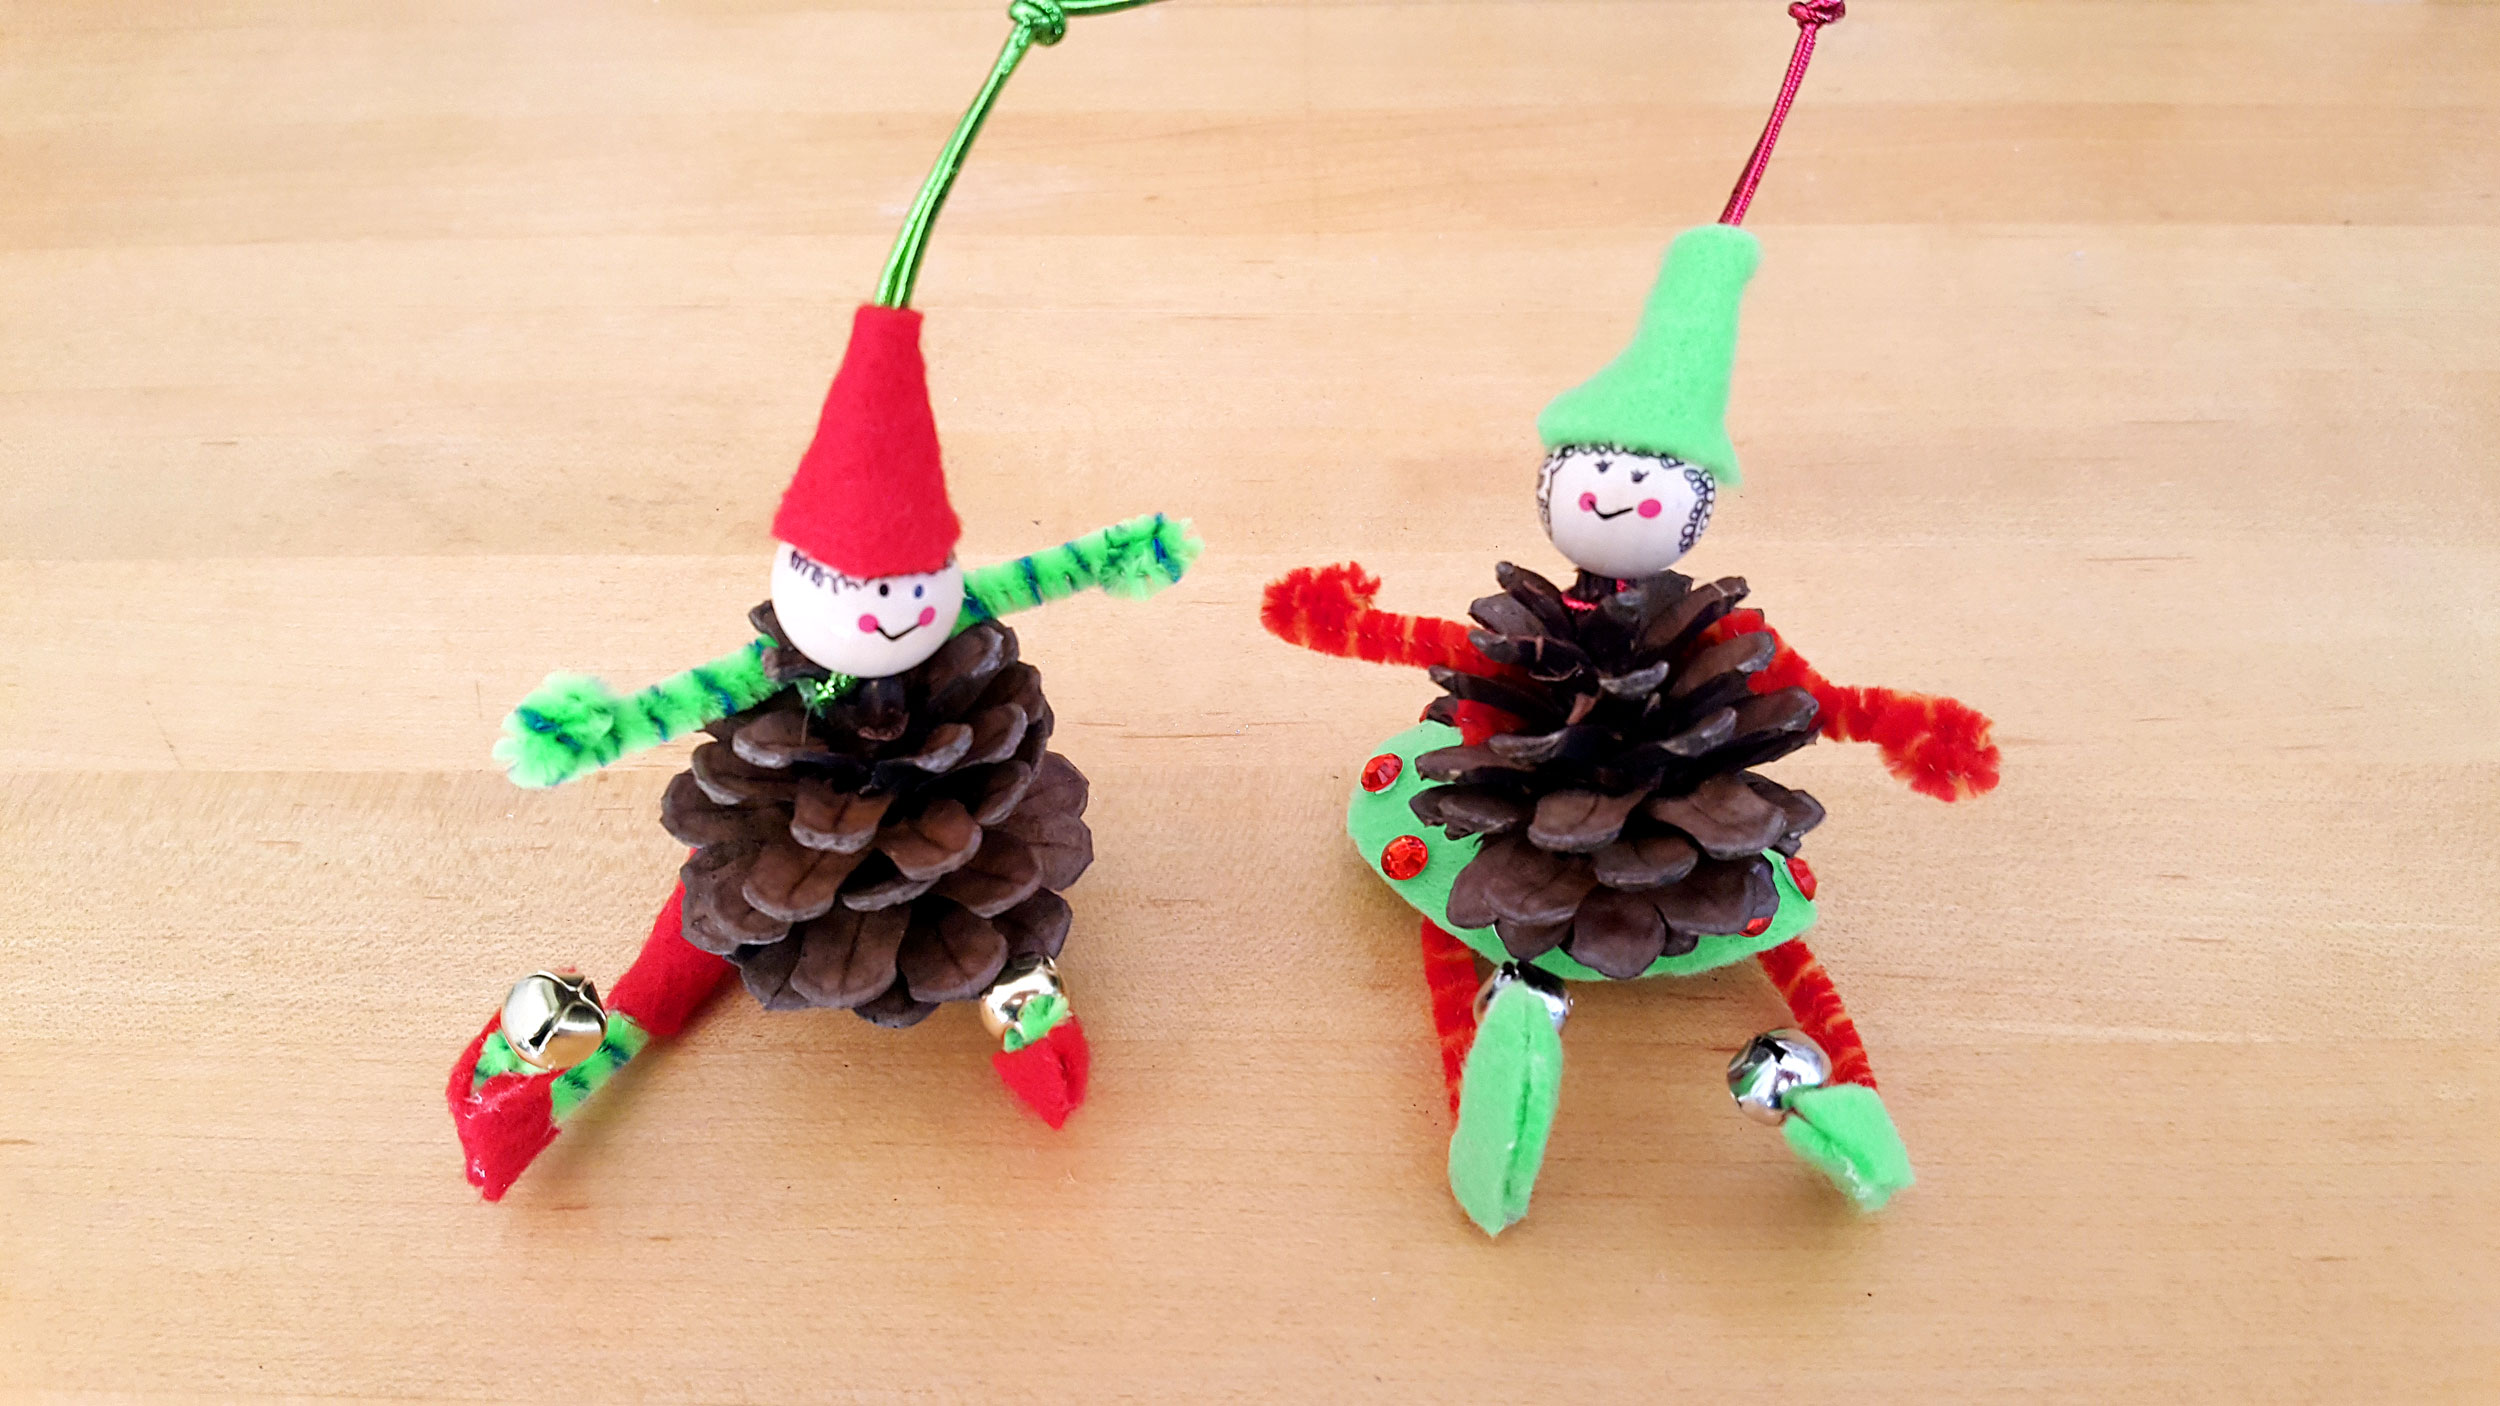 DIY Pine Cone Elf Ornaments Completely Assembled. | OrnamentShop.com